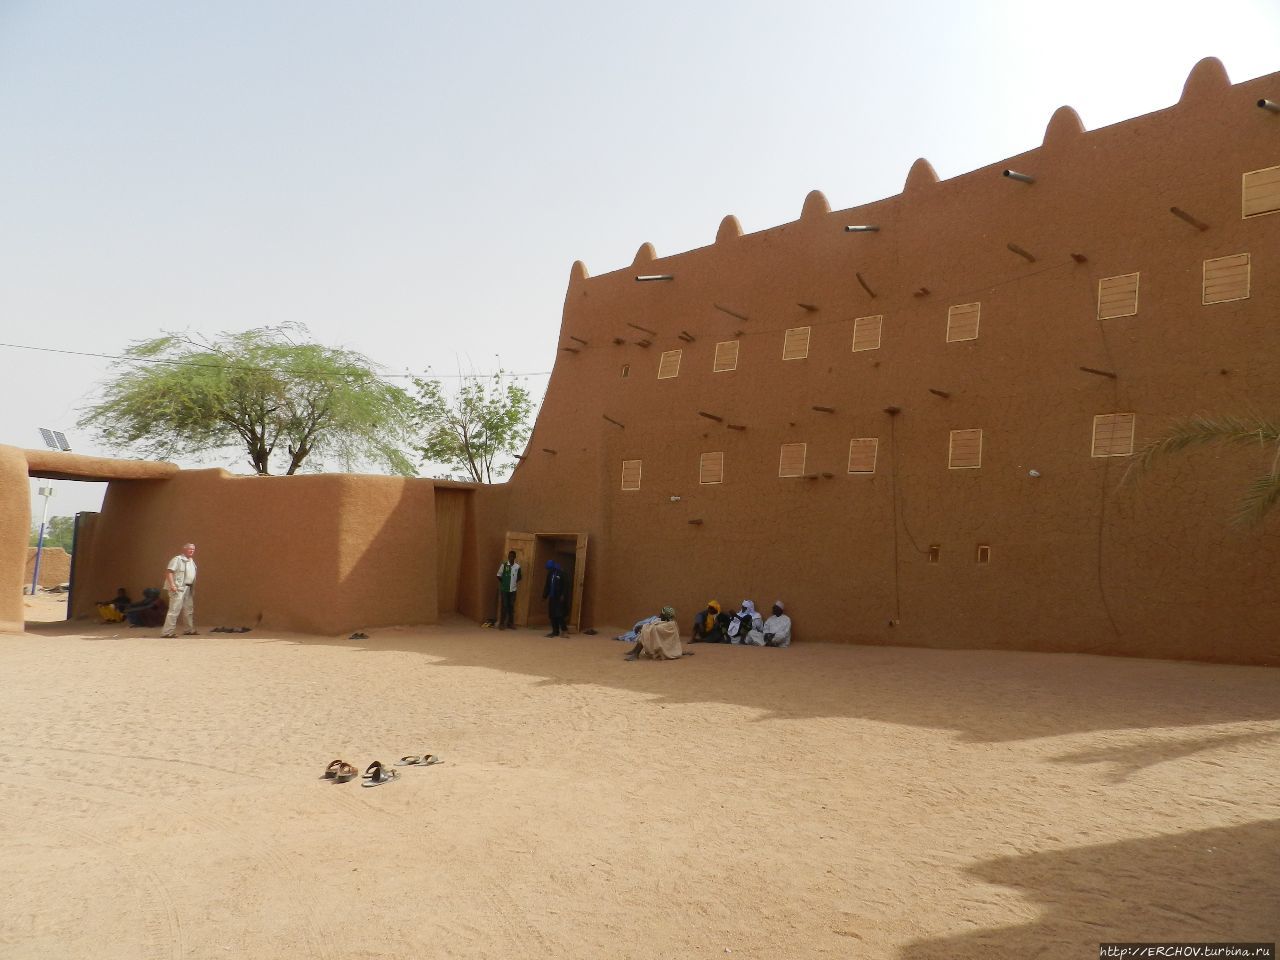 Исторический центр Агадеса Агадес, Нигер